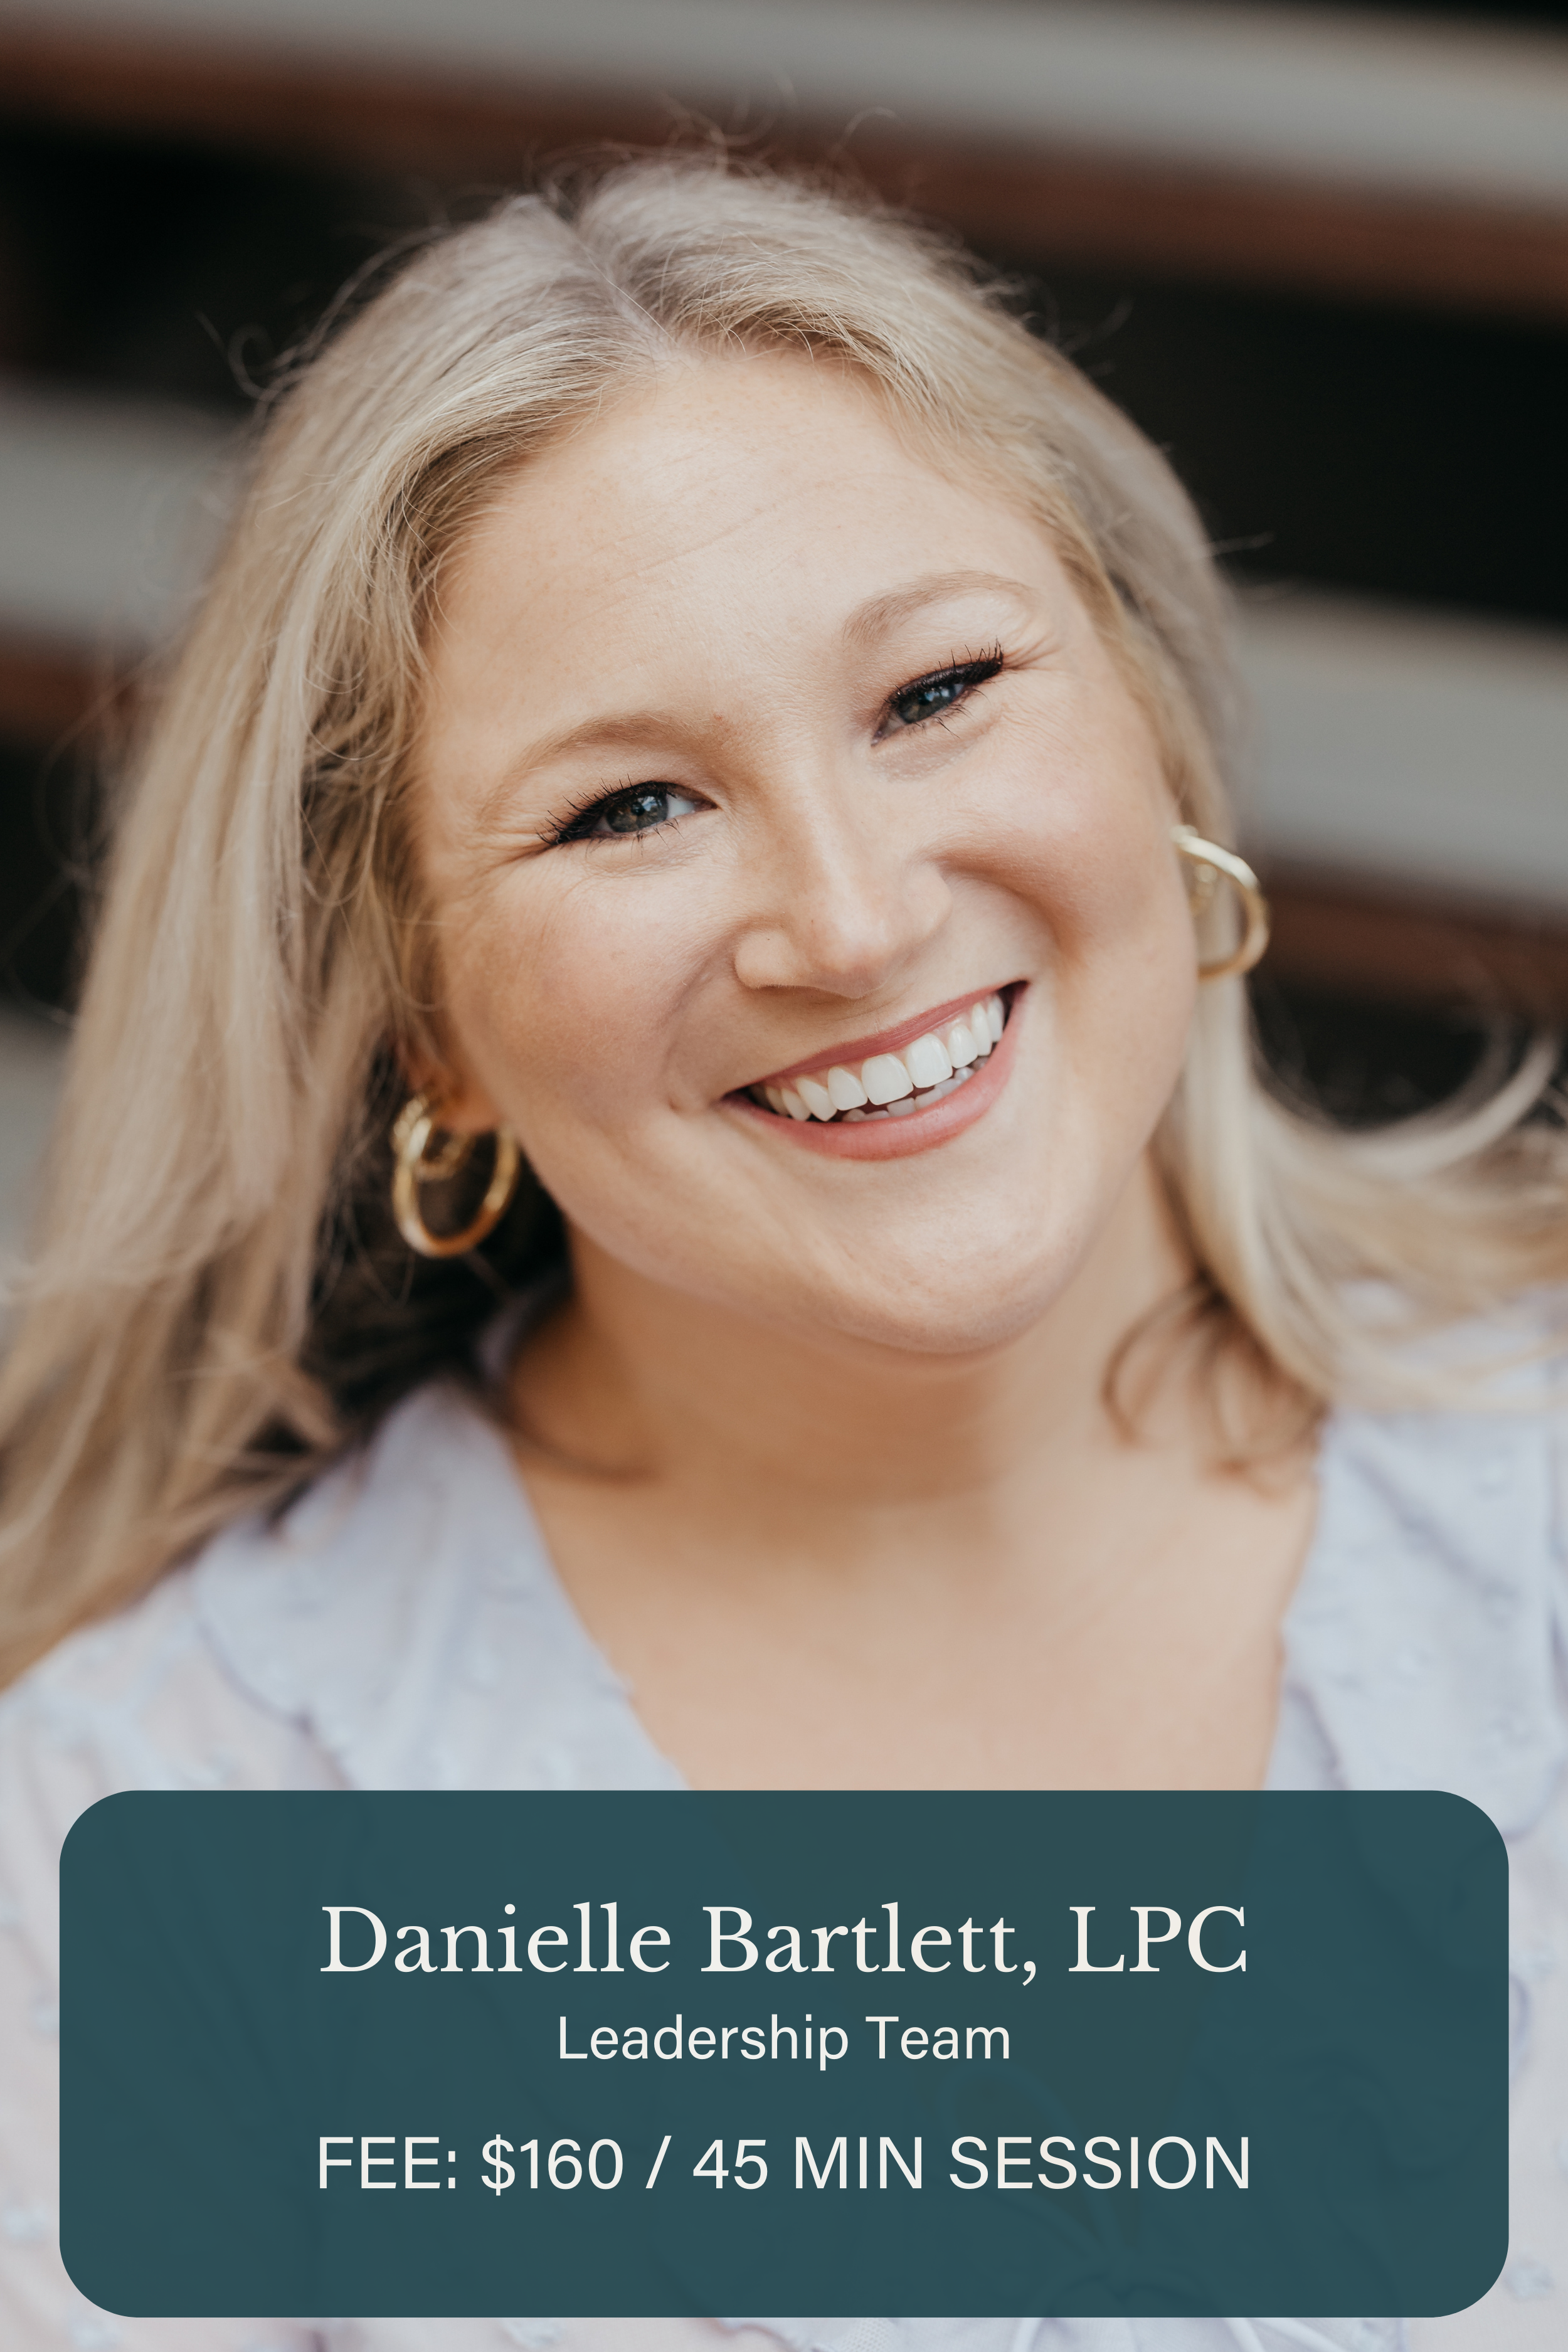 Danielle Bartlett, LPC